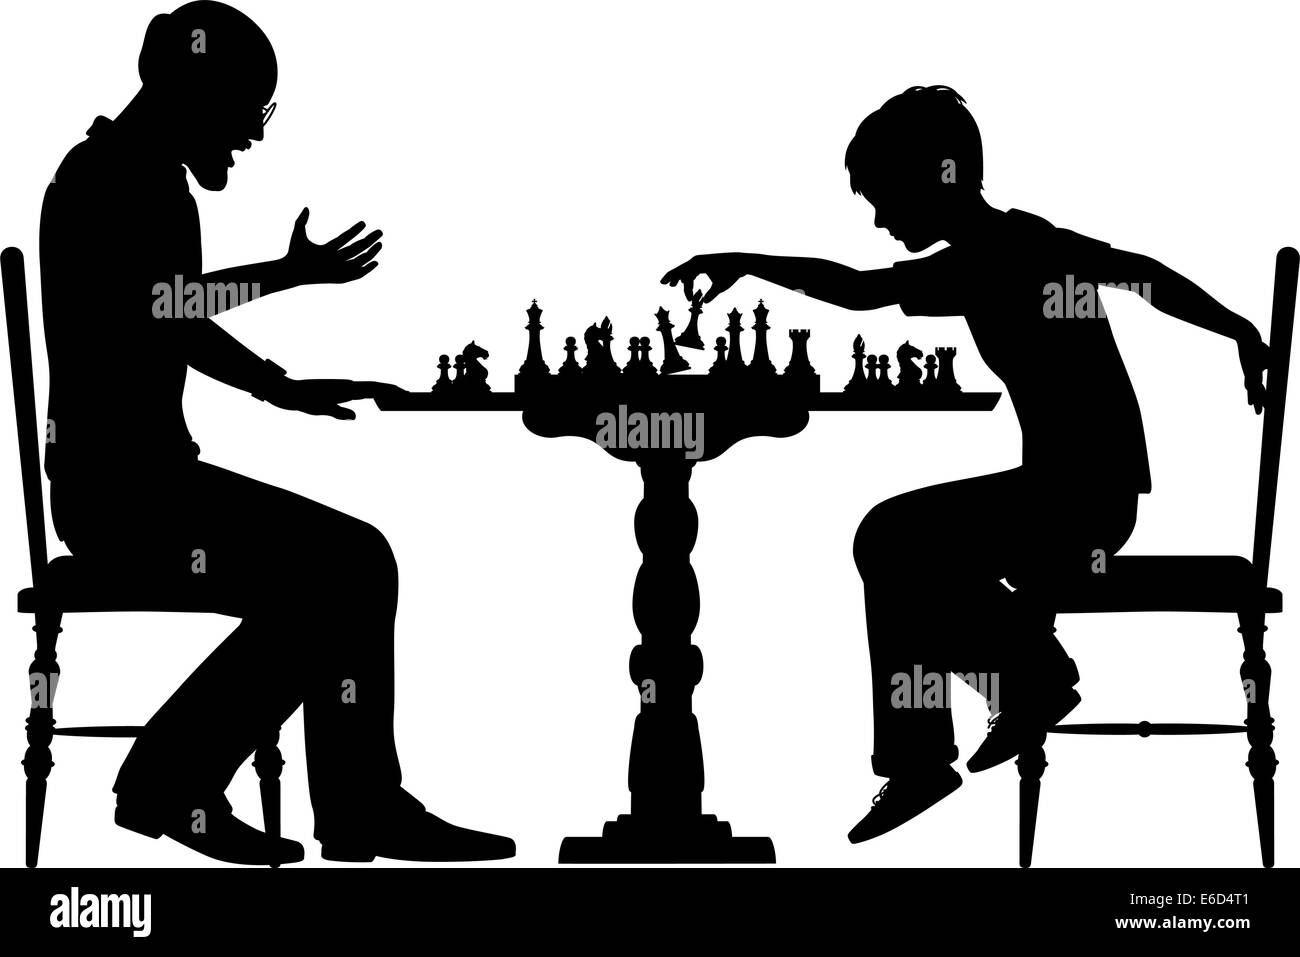 Bearbeitbares Vektor Silhouette eines kleinen Jungen gegen einen Mann beim Schach mit allen Elementen als separate Objekte Stock Vektor